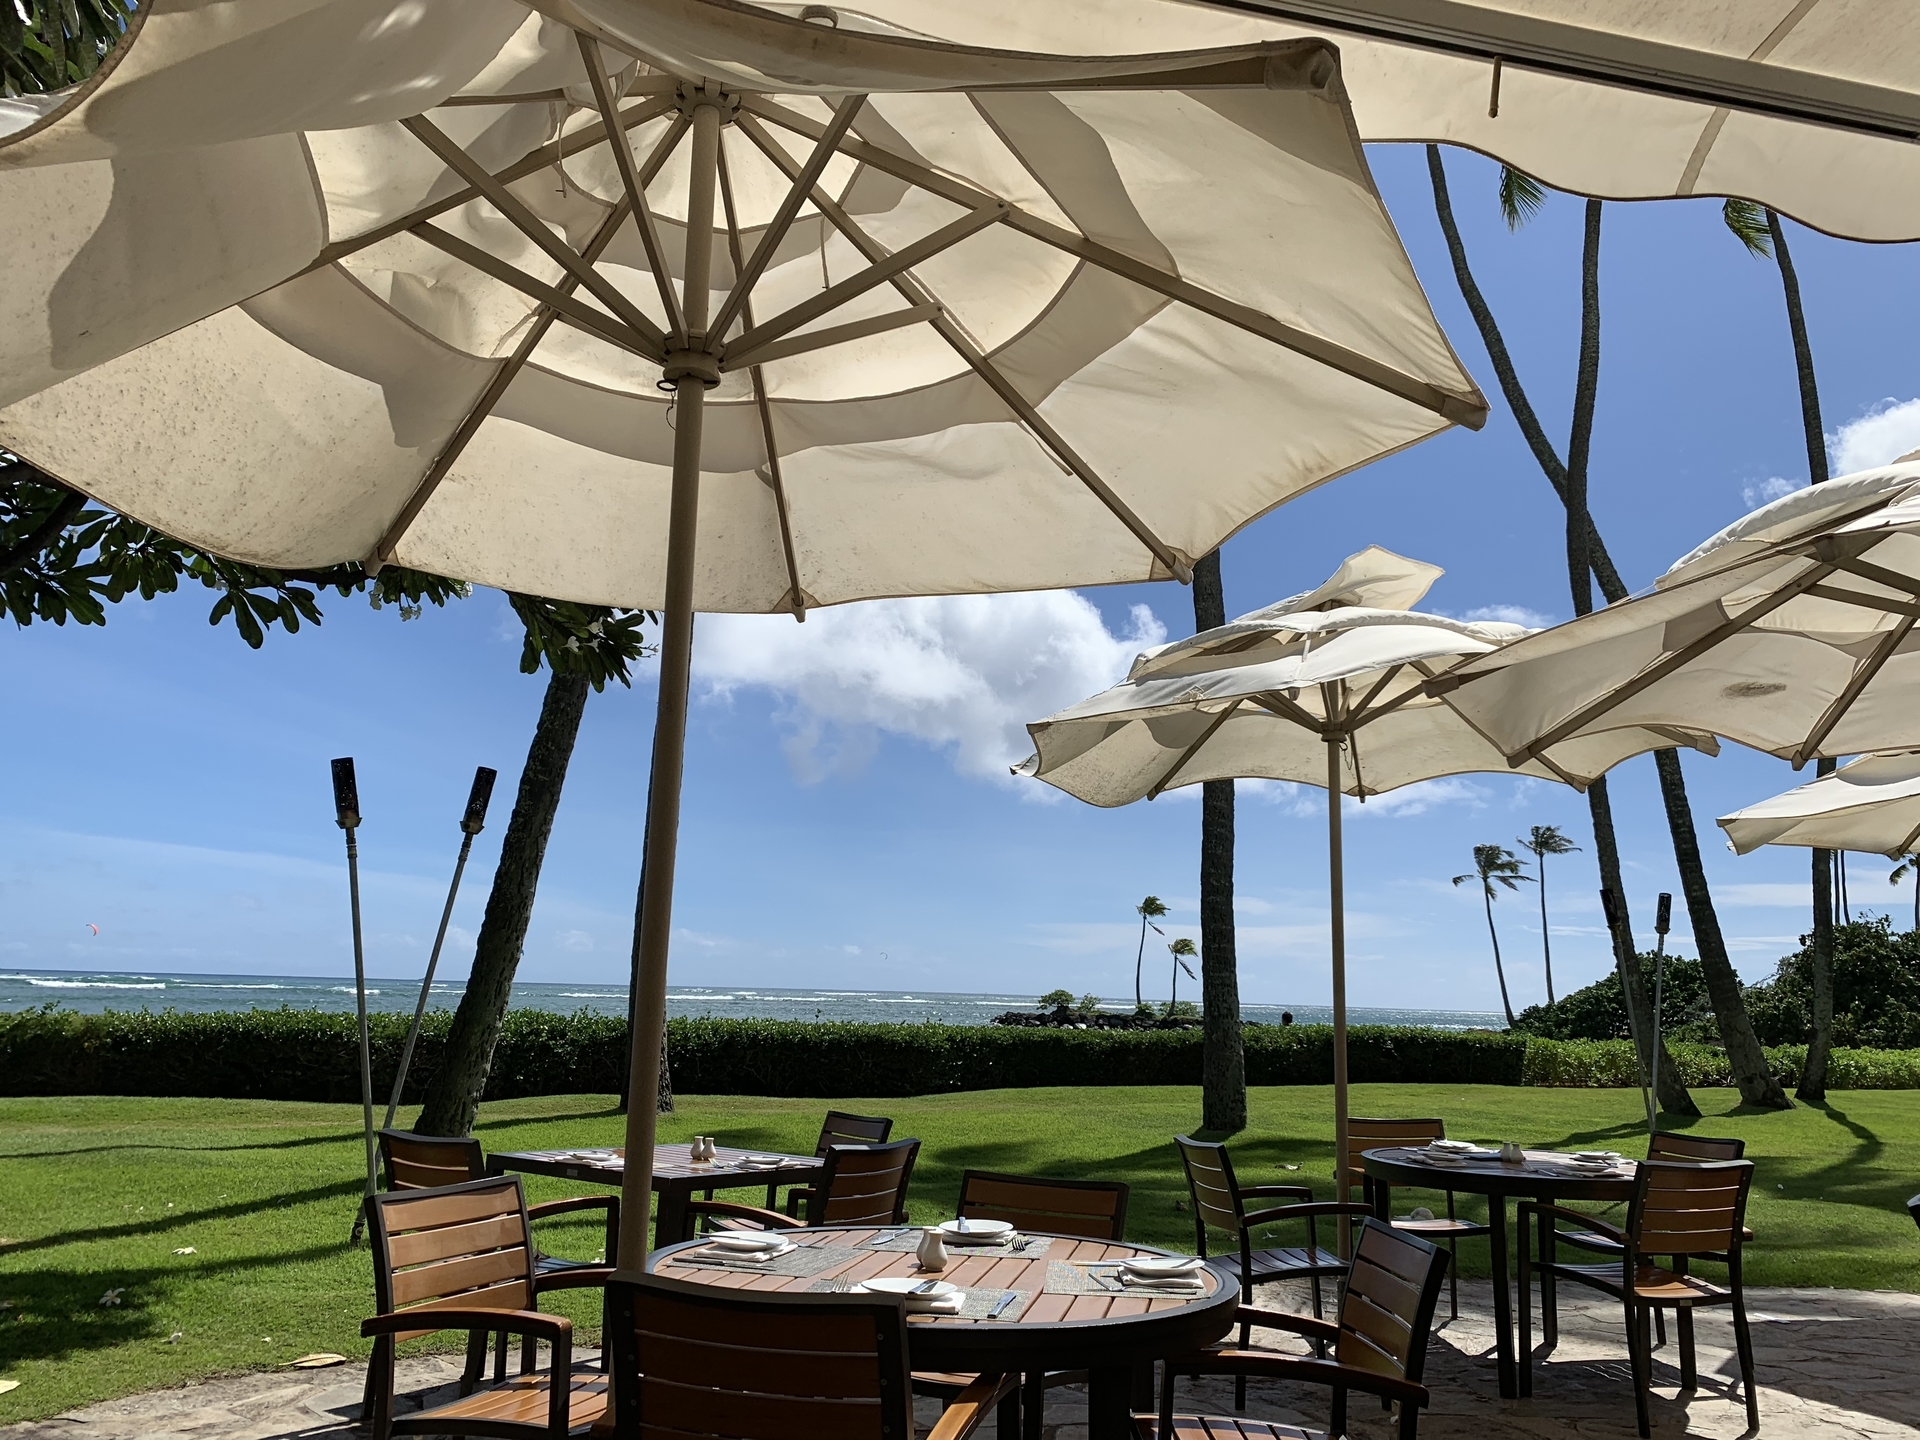 ザ カハラホテル の 朝食ビュッフェ プルメリアビーチハウス 海が見えるテラス席は理想的なハワイの朝食 クレジットカードを活用しお得に旅するミセスのちょっとイイ話